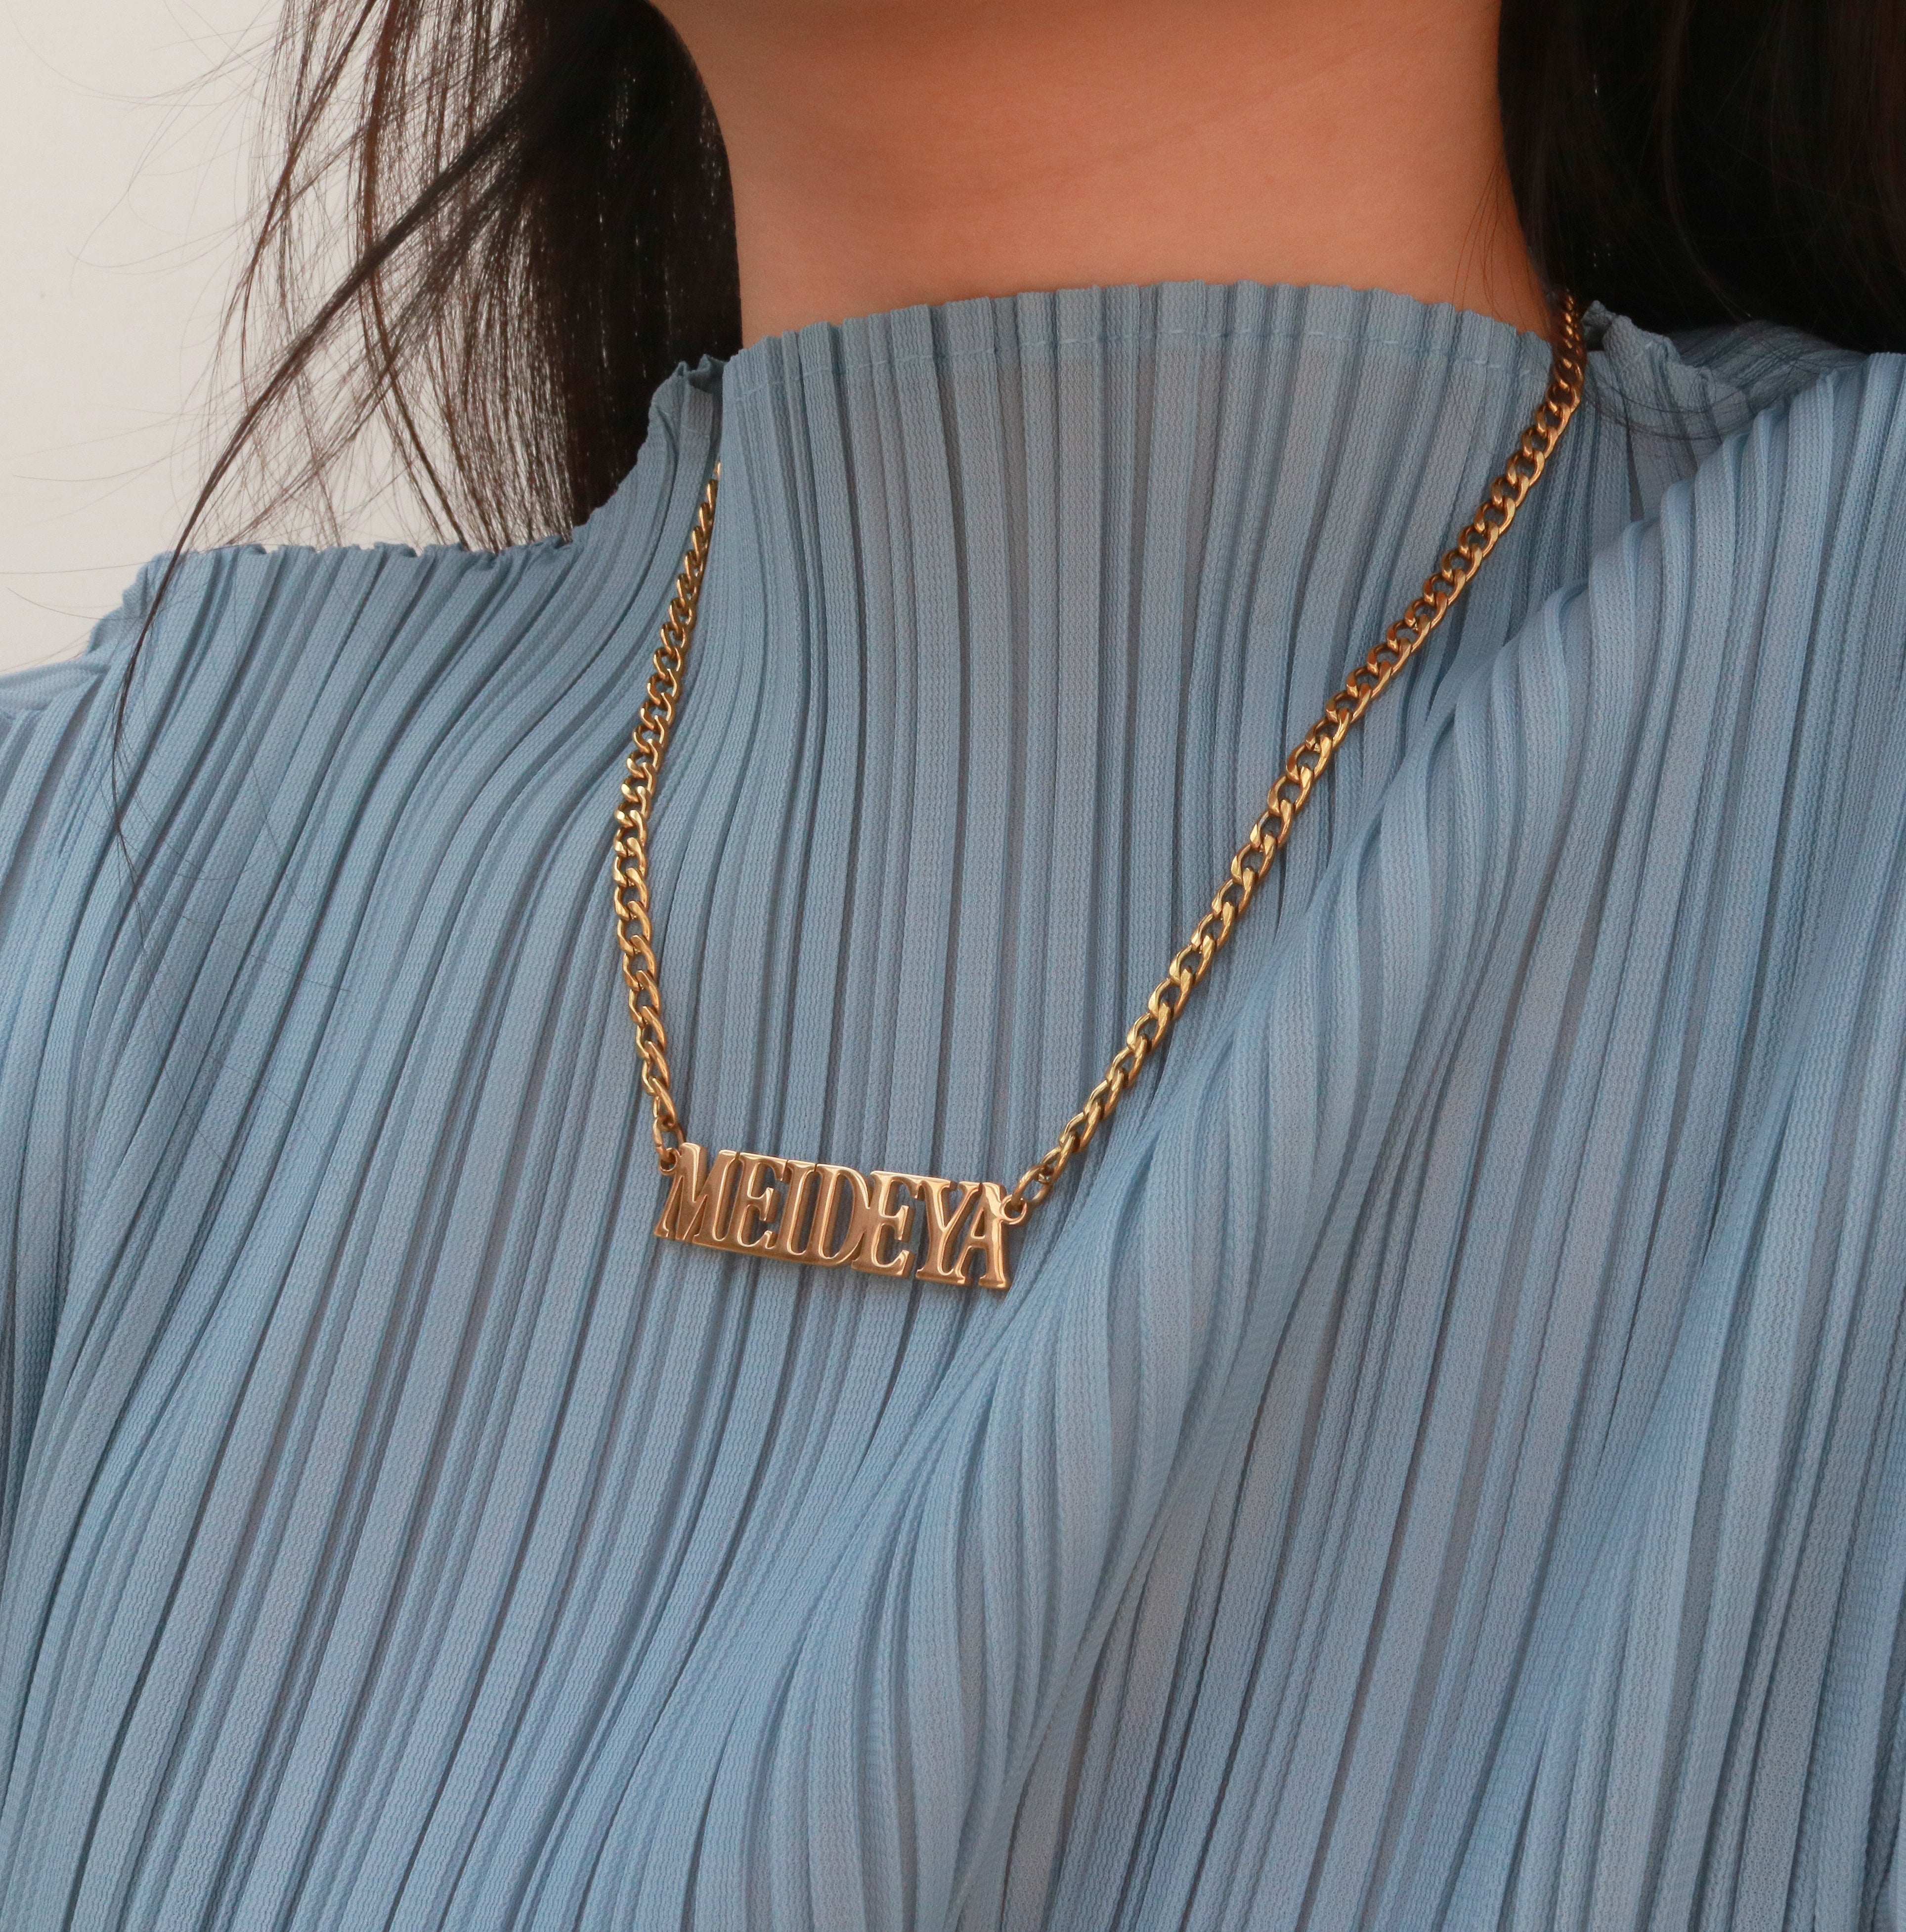 Meideya Jewelry - Custom nameplate necklace